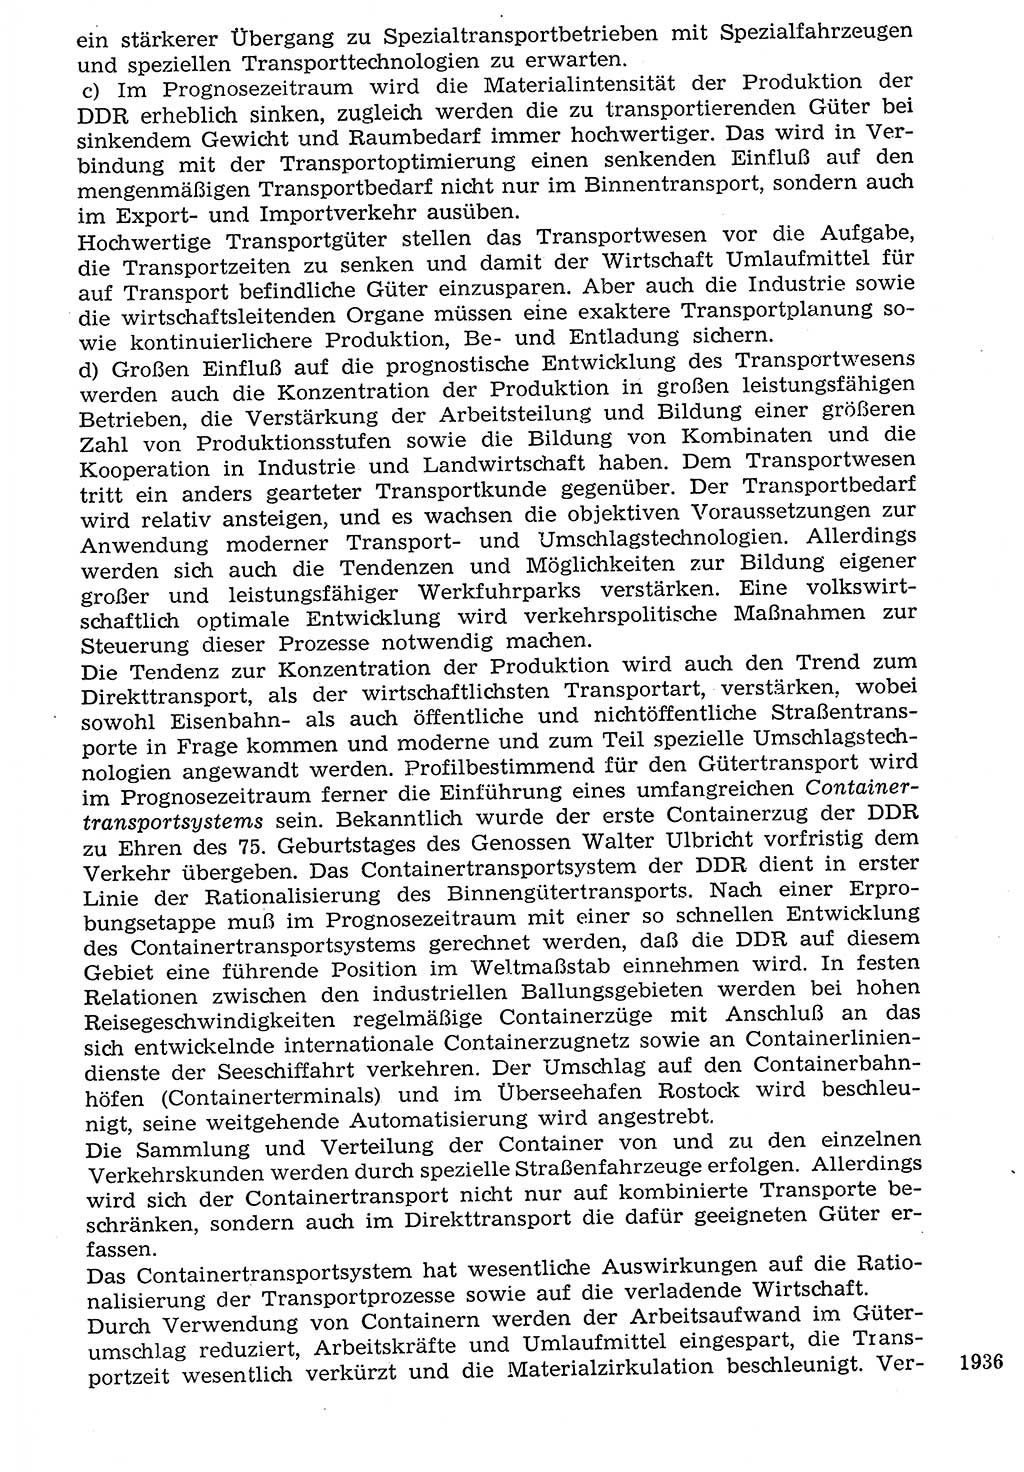 Staat und Recht (StuR), 17. Jahrgang [Deutsche Demokratische Republik (DDR)] 1968, Seite 1936 (StuR DDR 1968, S. 1936)